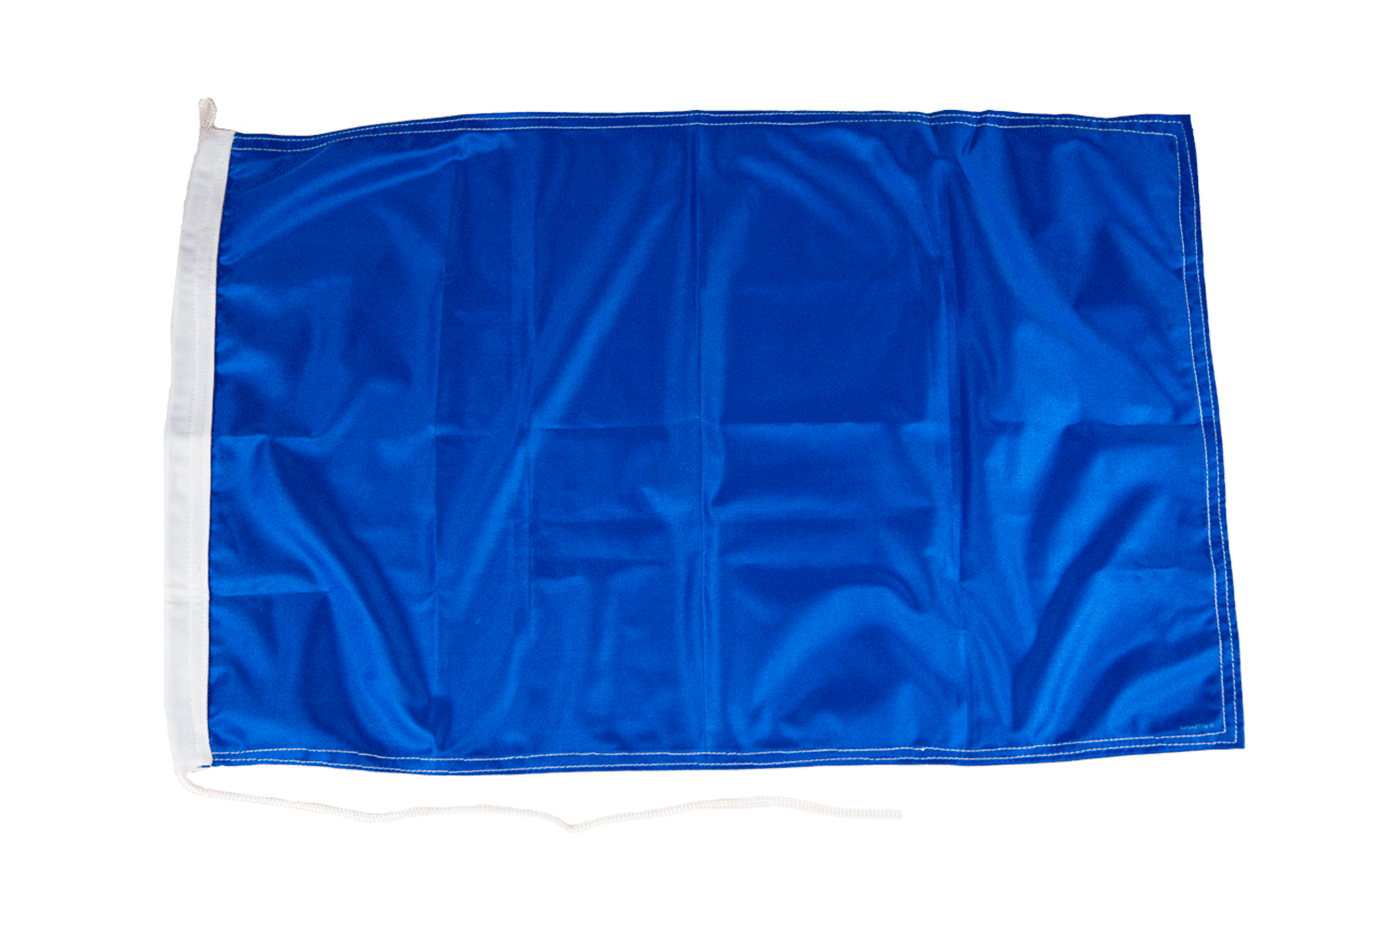 Bandera azul de regatas